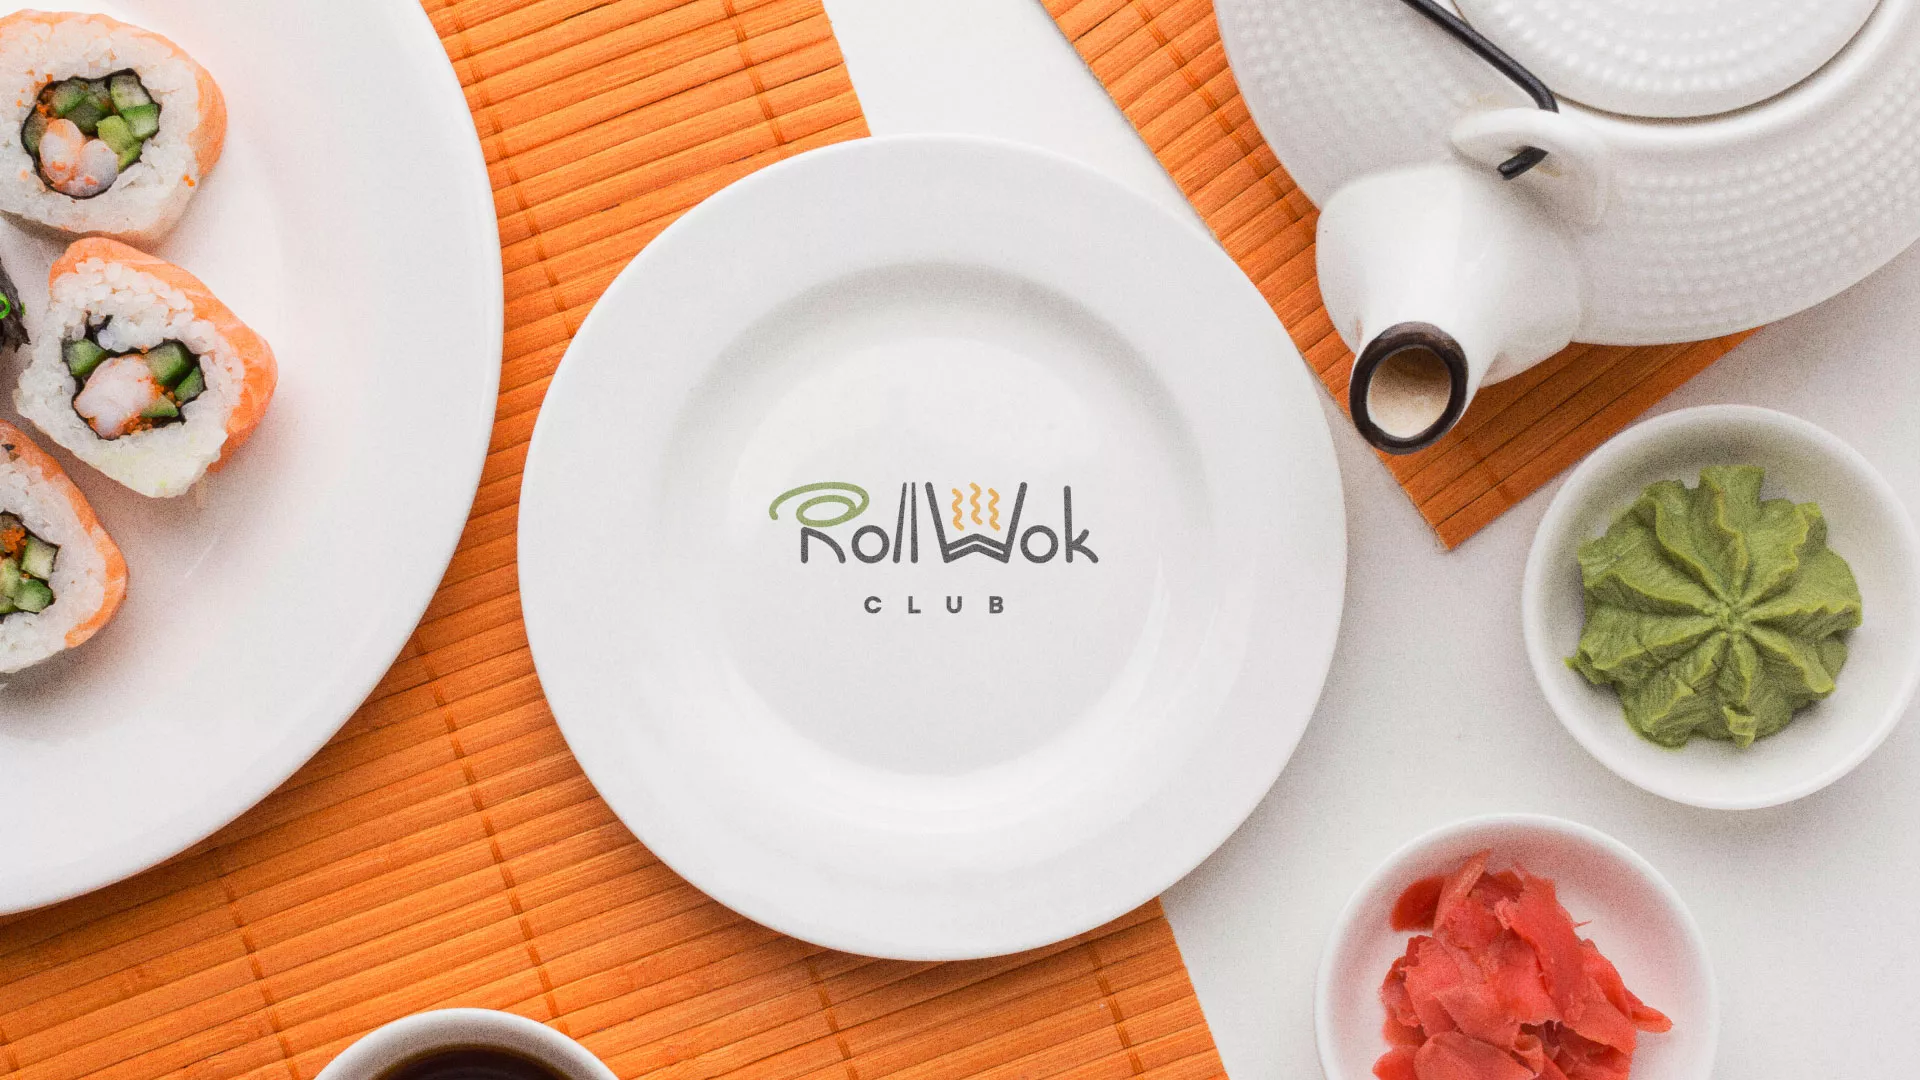 Разработка логотипа и фирменного стиля суши-бара «Roll Wok Club» в Пионерском